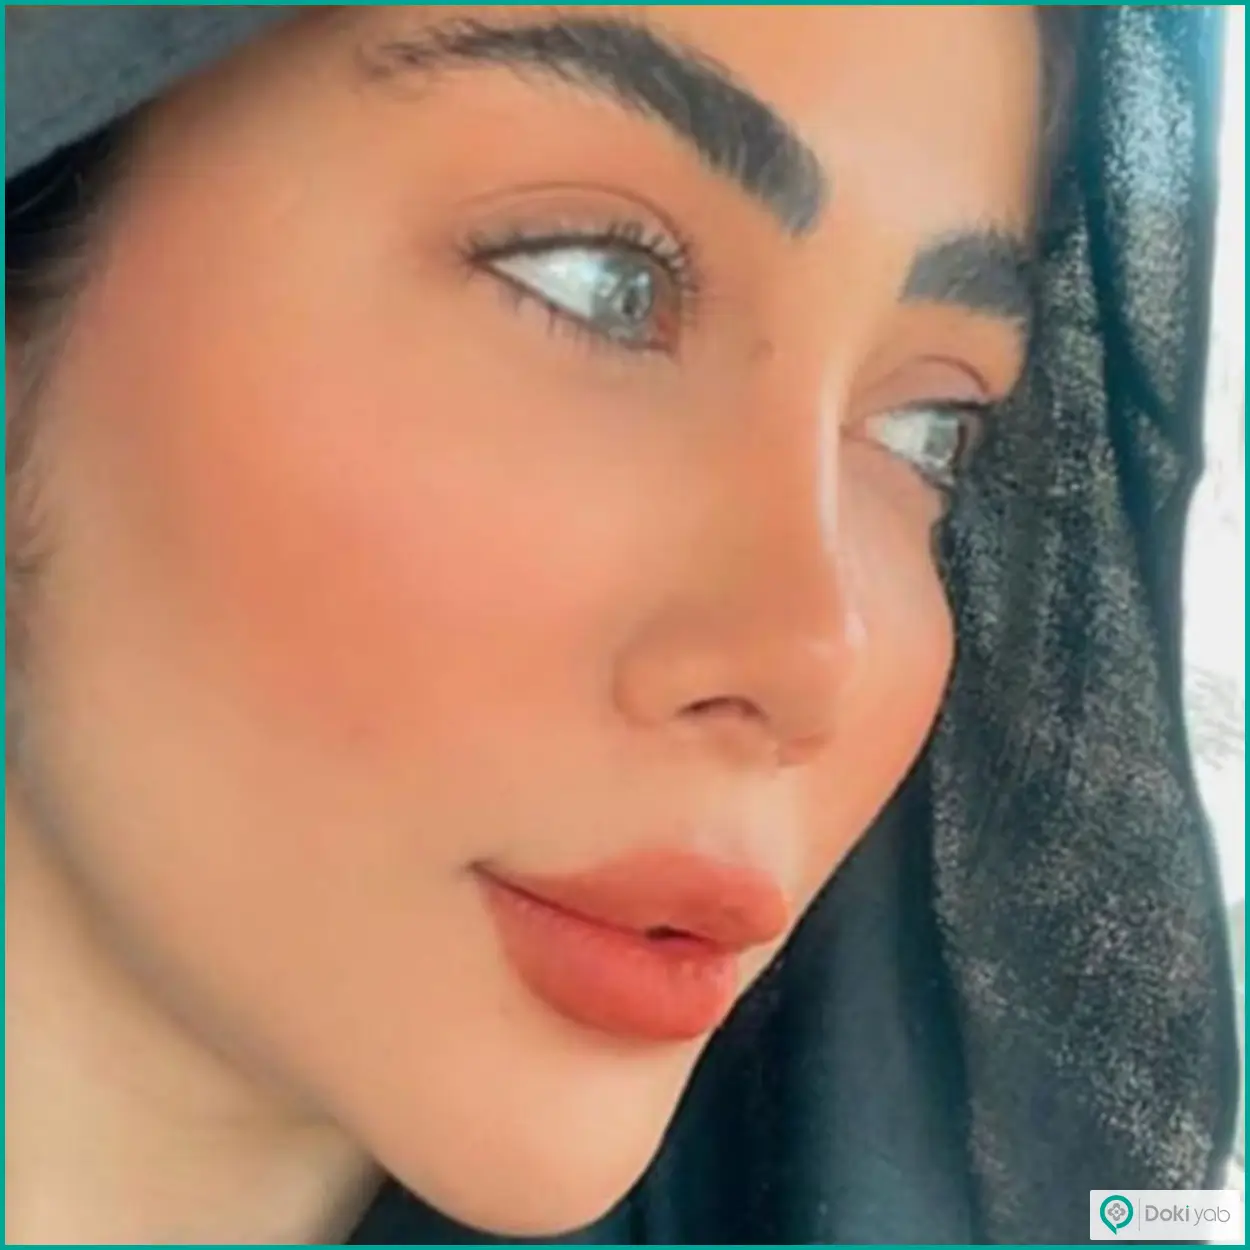 نمونه عمل زیبایی بینی نیمه فانتزی دکتر بهروز گندمی جراح بینی در شیراز